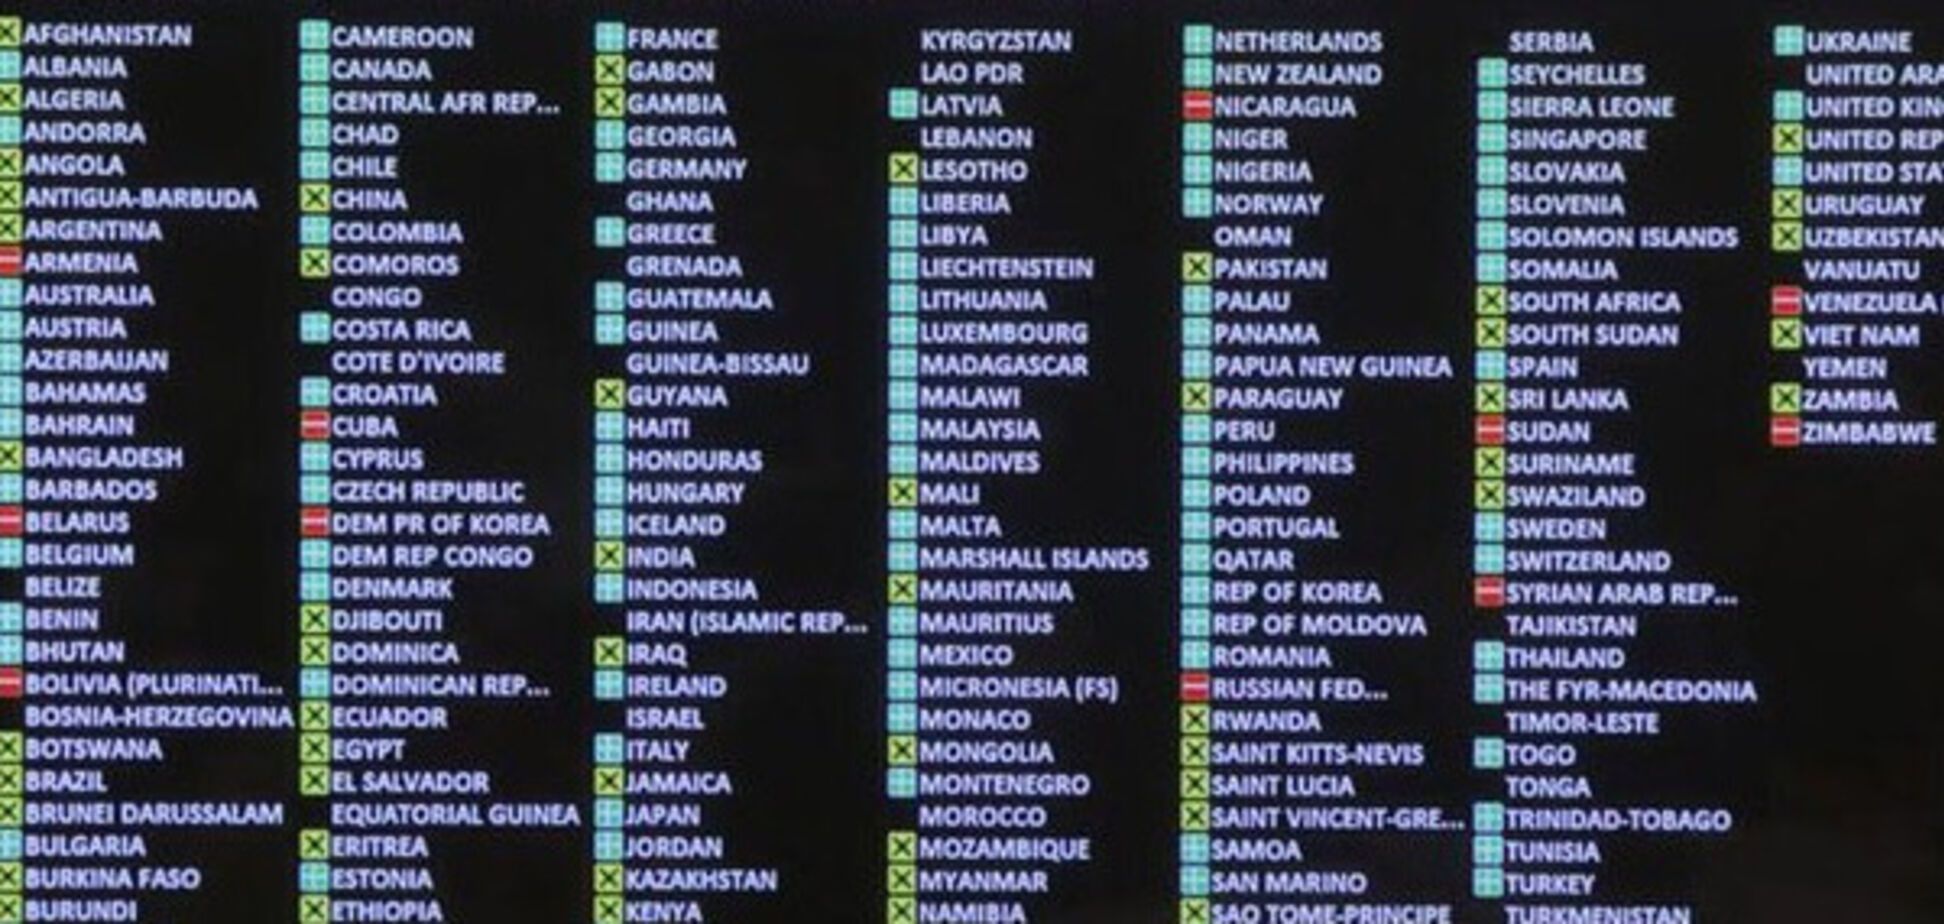 Израиль не поддержал в ООН резолюцию по Украине в 2014 году - Олефиров 